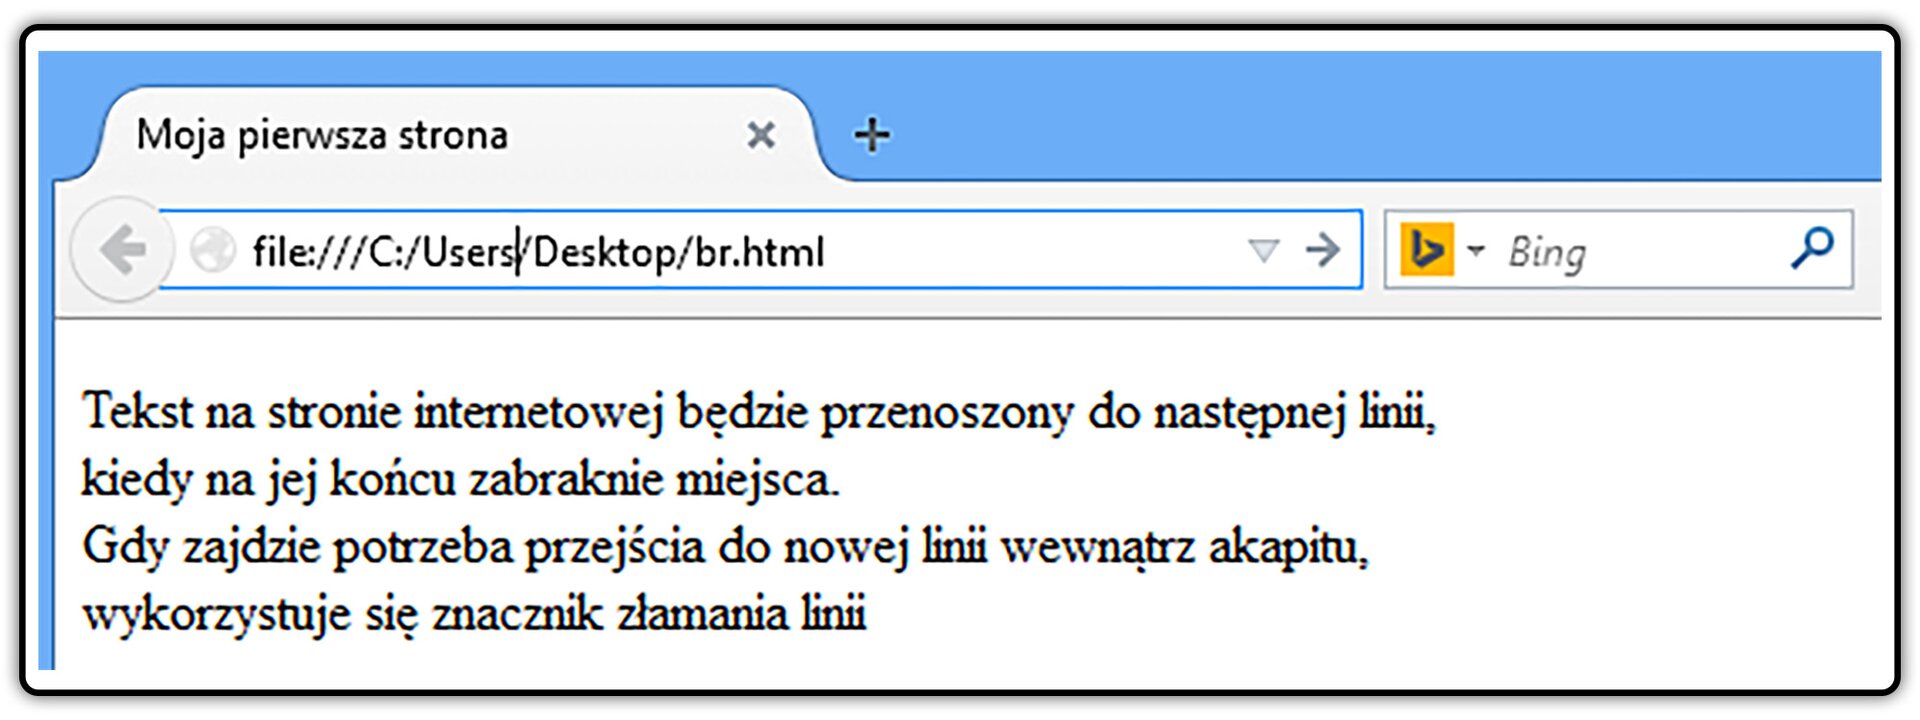 Zrzut widoku strony dokumentu HTML z tekstem umieszczonym pomiędzy znacznikami początku i końca akapitu